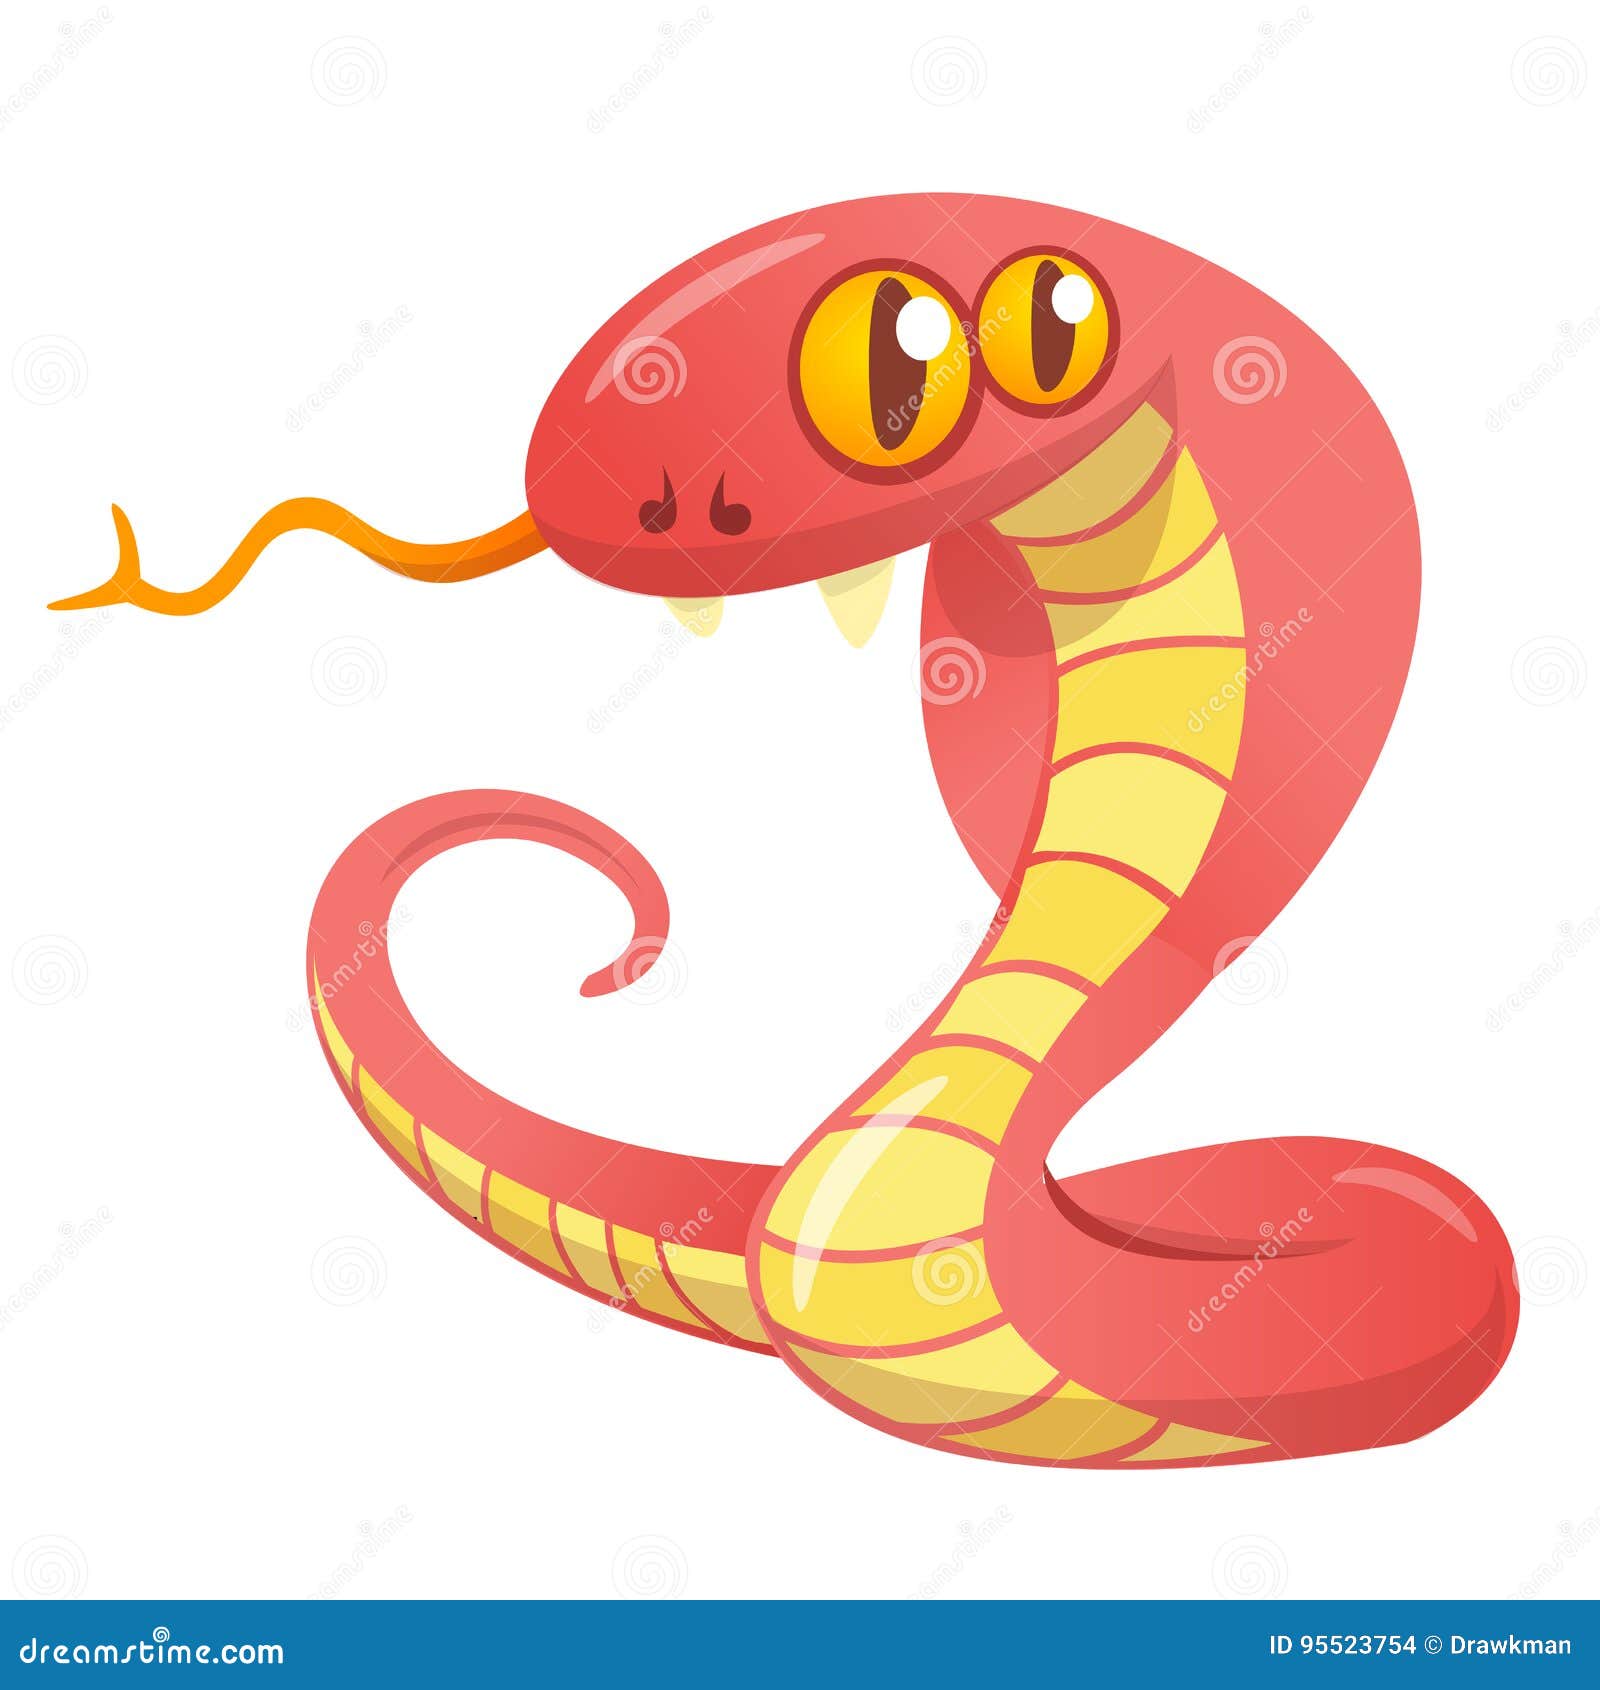 Serpente Da Cobra Dos Desenhos Animados Ilustração do Vetor